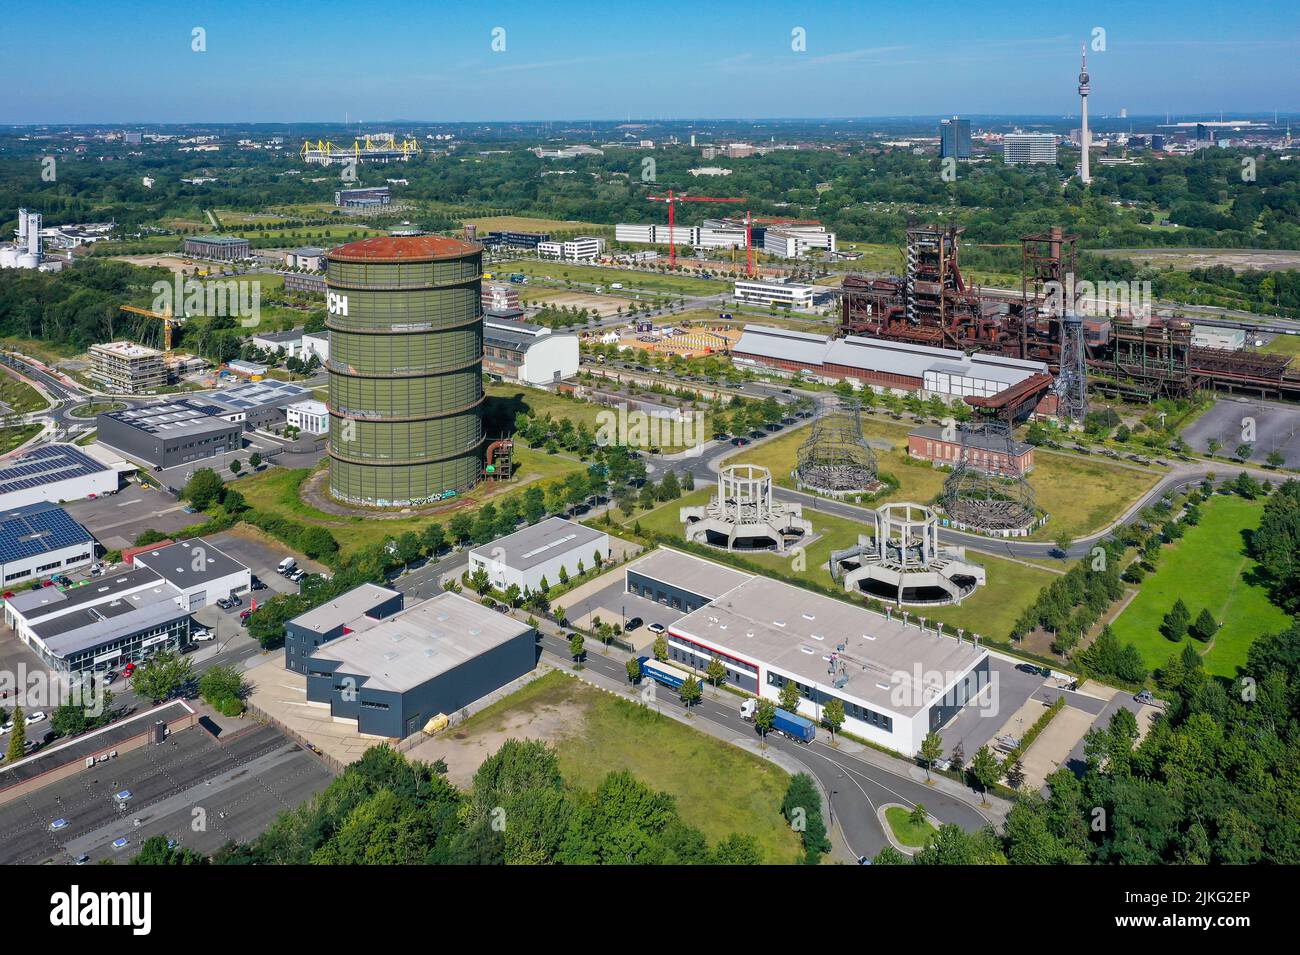 23.05.2022, Alemania, Renania del Norte-Westfalia, Dortmund - Phoenix West. Tras el cierre de la antigua planta de altos hornos de Hoesch en 1998, el sitio fue RE Foto de stock